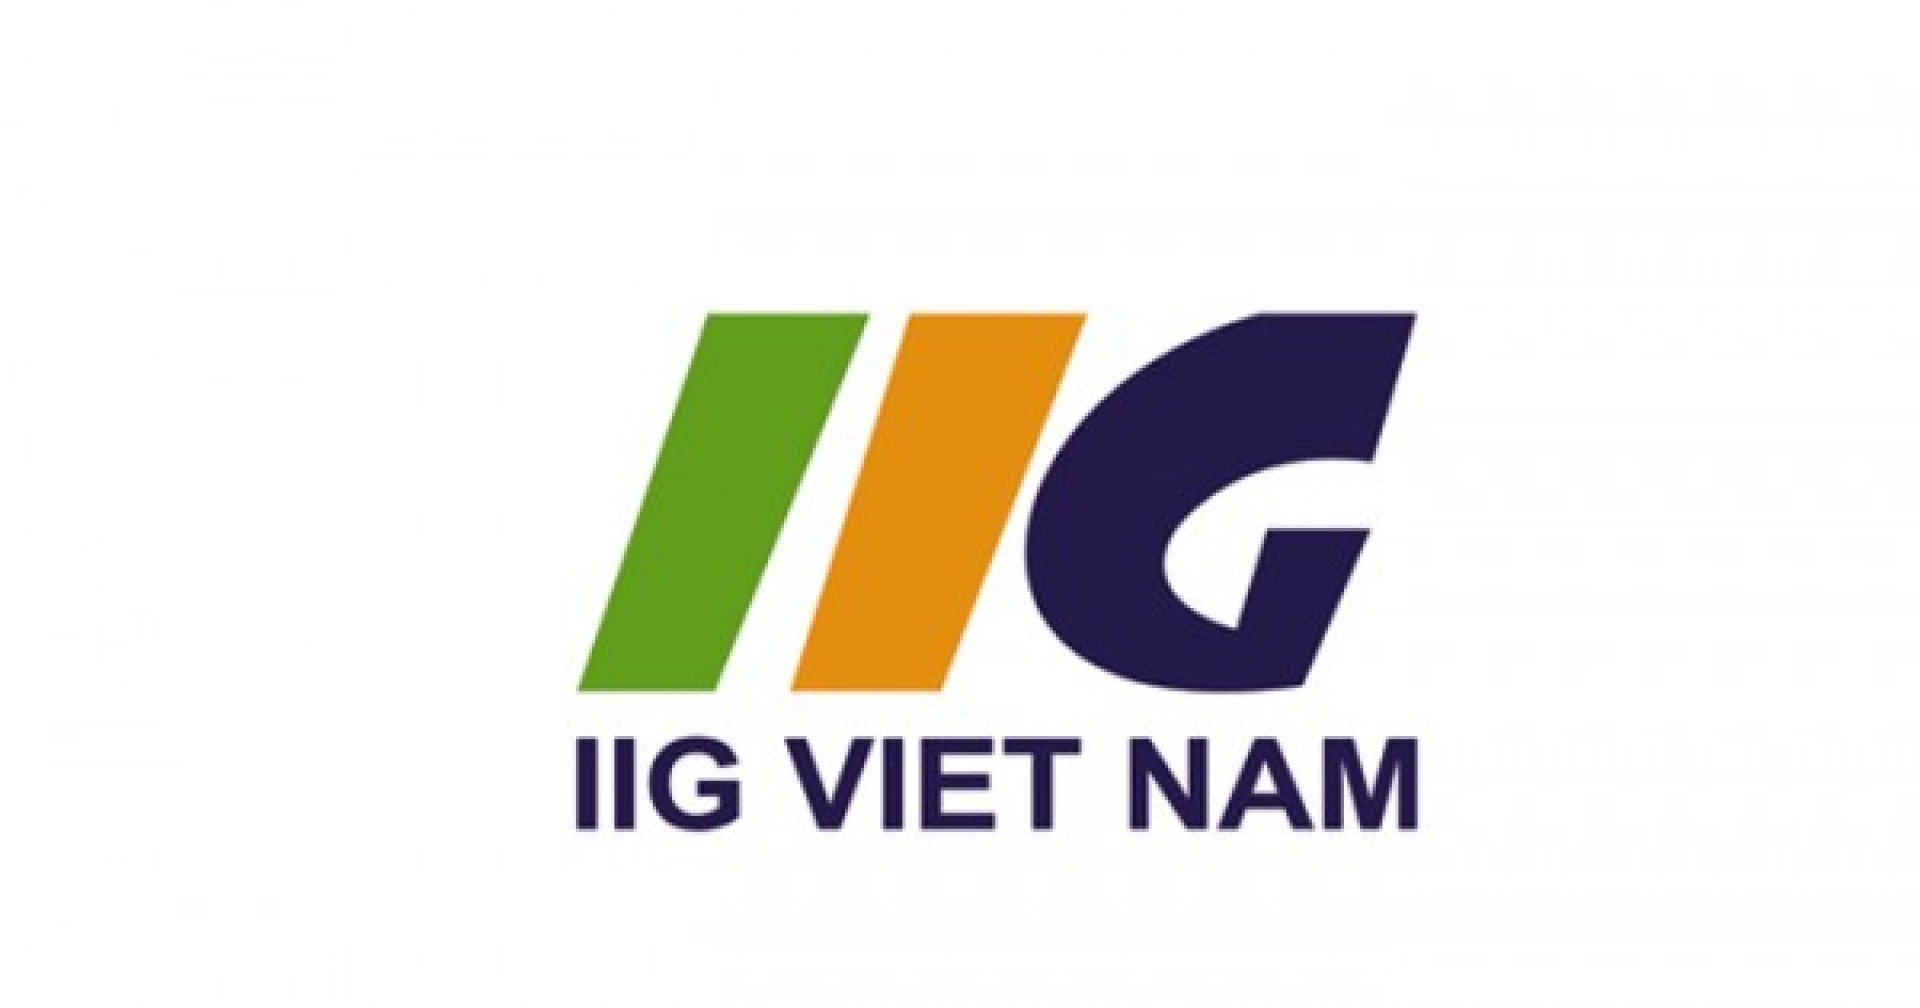 [HN] IIG Việt Nam Tuyển Dụng Cộng Tác Viên Part-time 2017